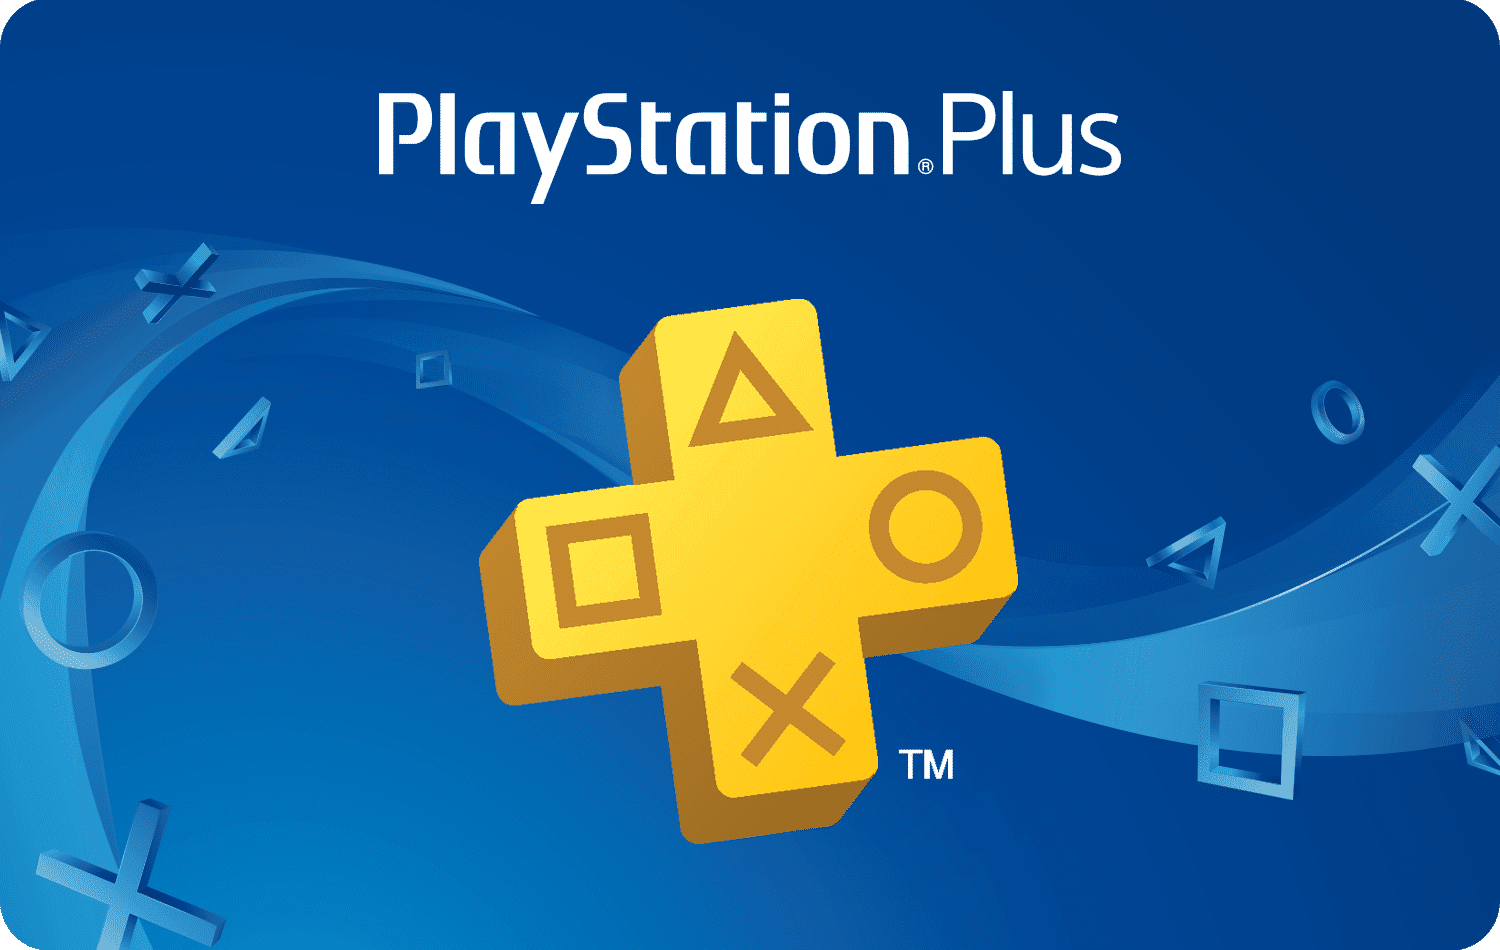 Abonnement PlayStation Plus 3 mois